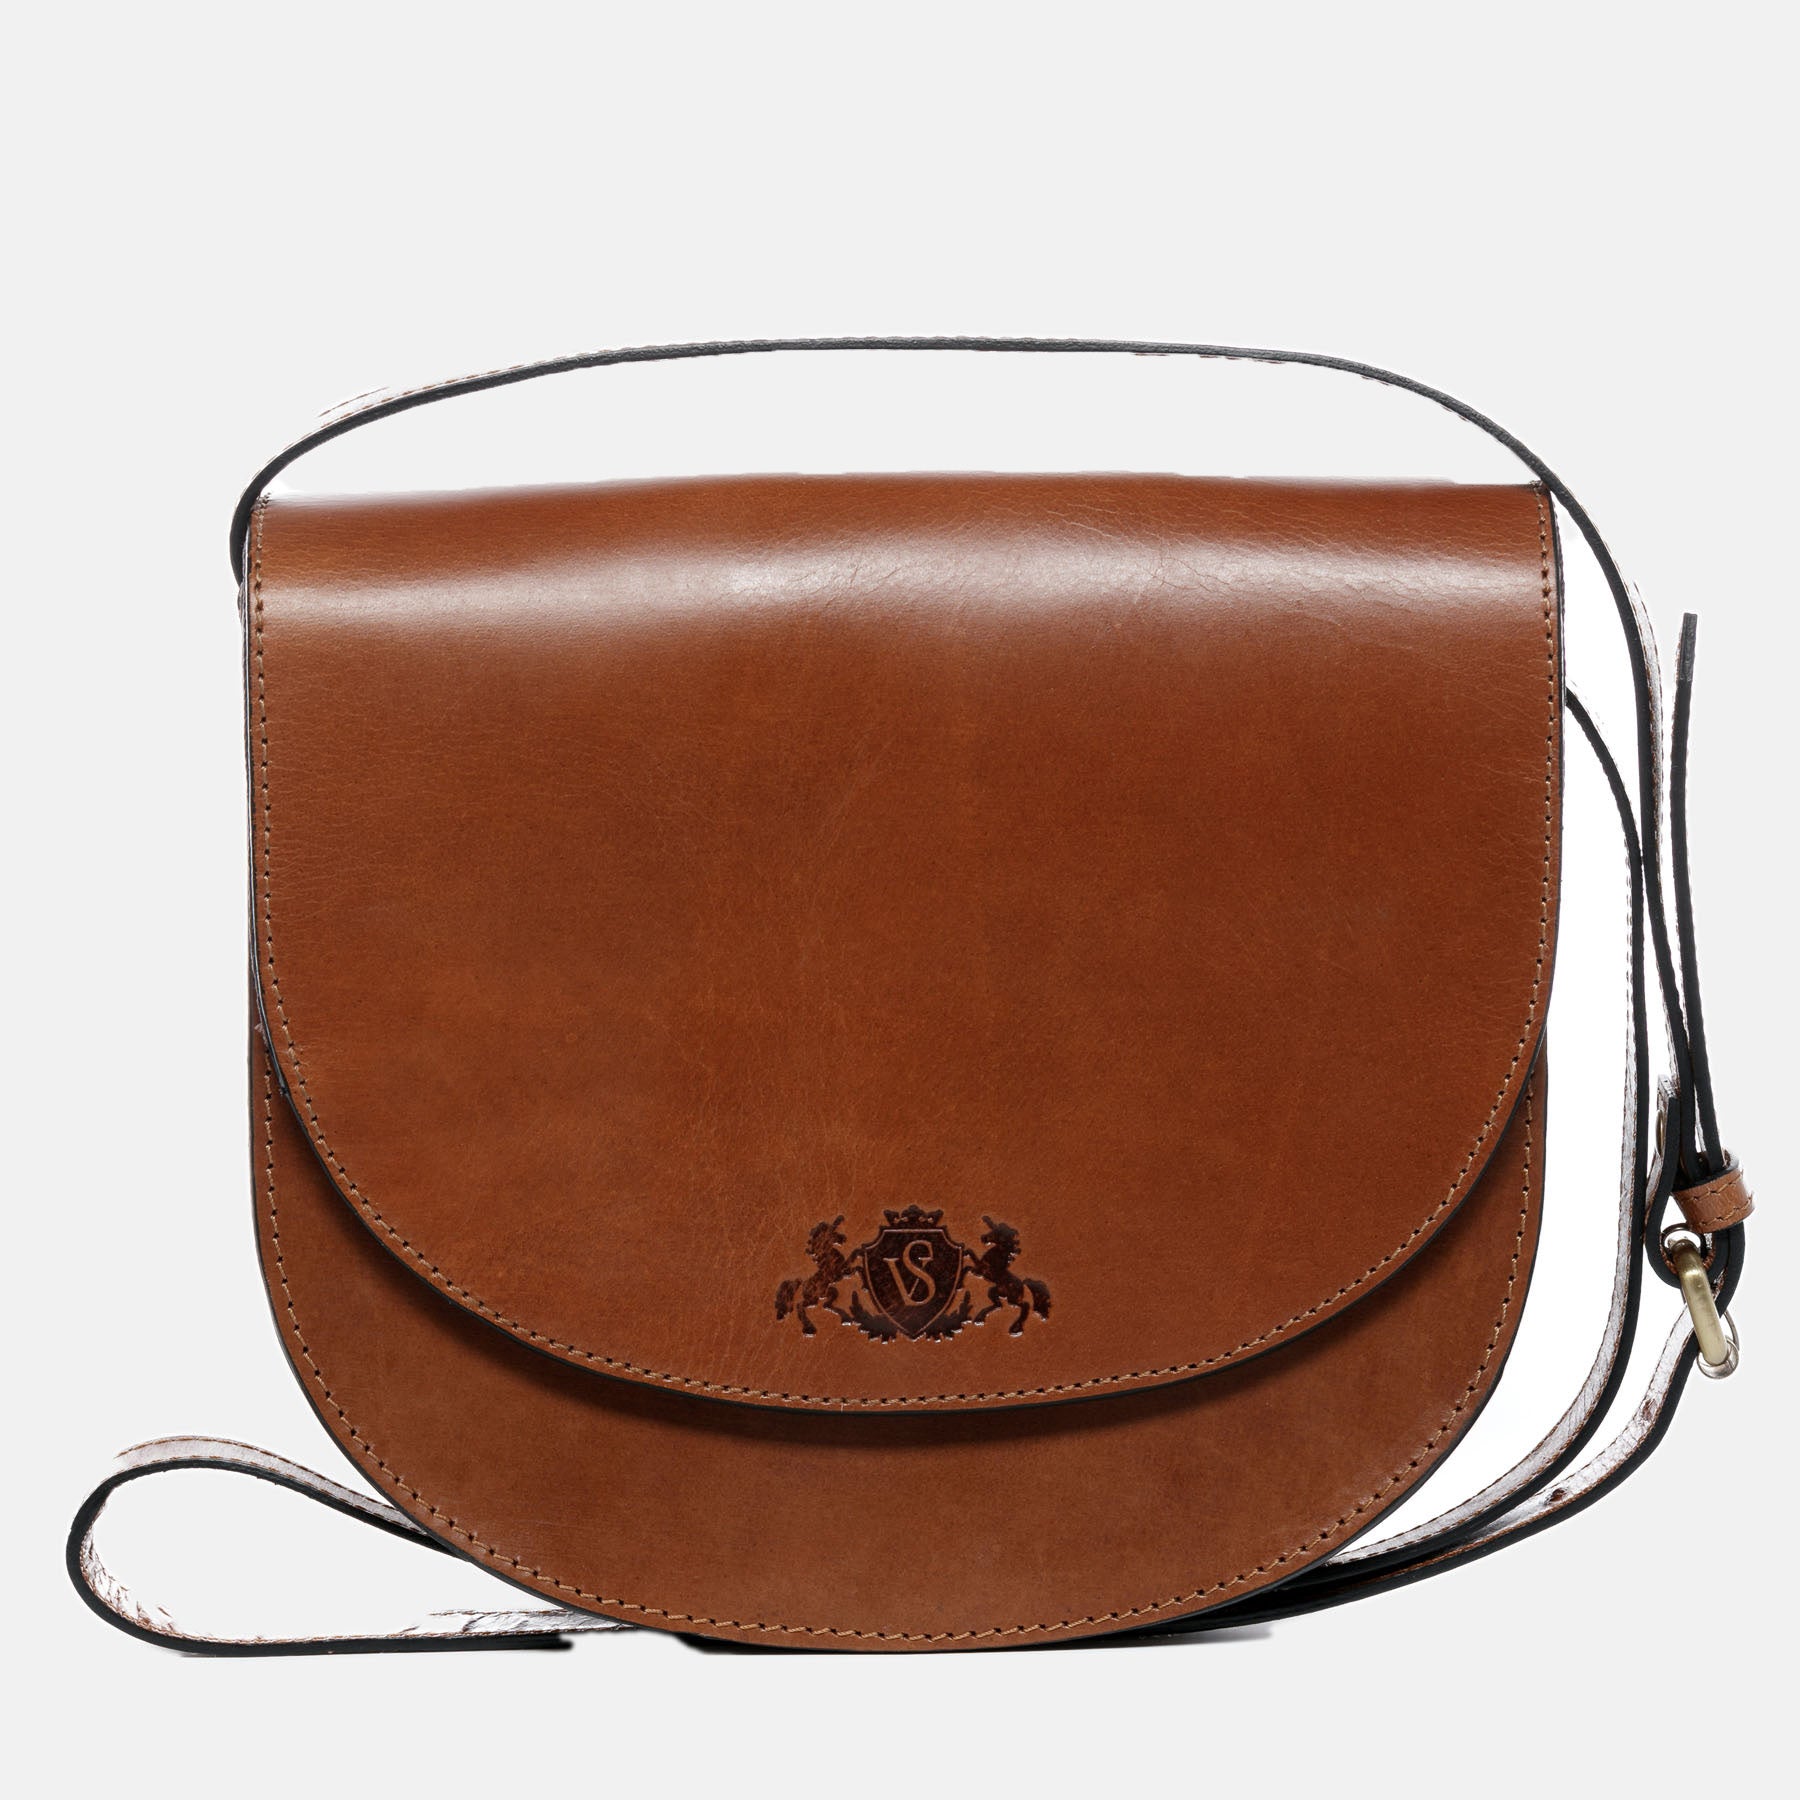 Shoulder bag TRISH saddle leather light brown-cognac